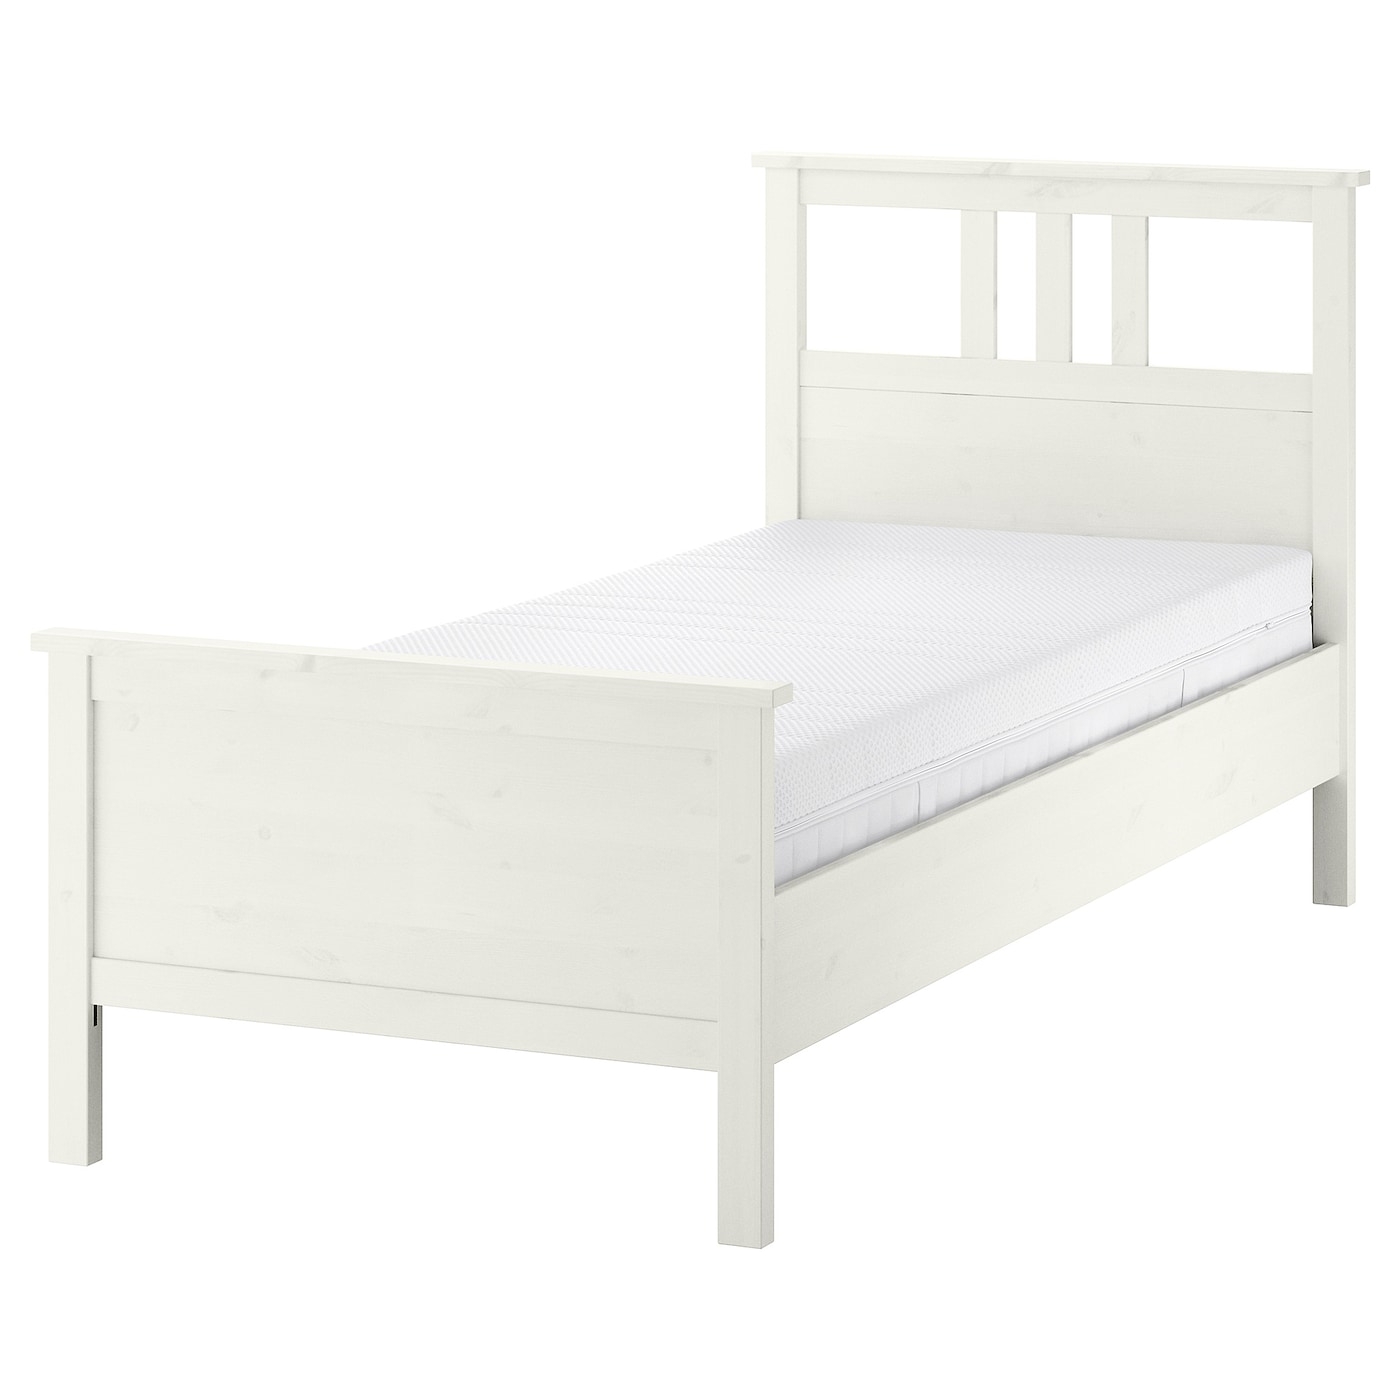 Кровать - IKEA HEMNES, 200х90 см, матрас жесткий, белый, ХЕМНЭС ИКЕА